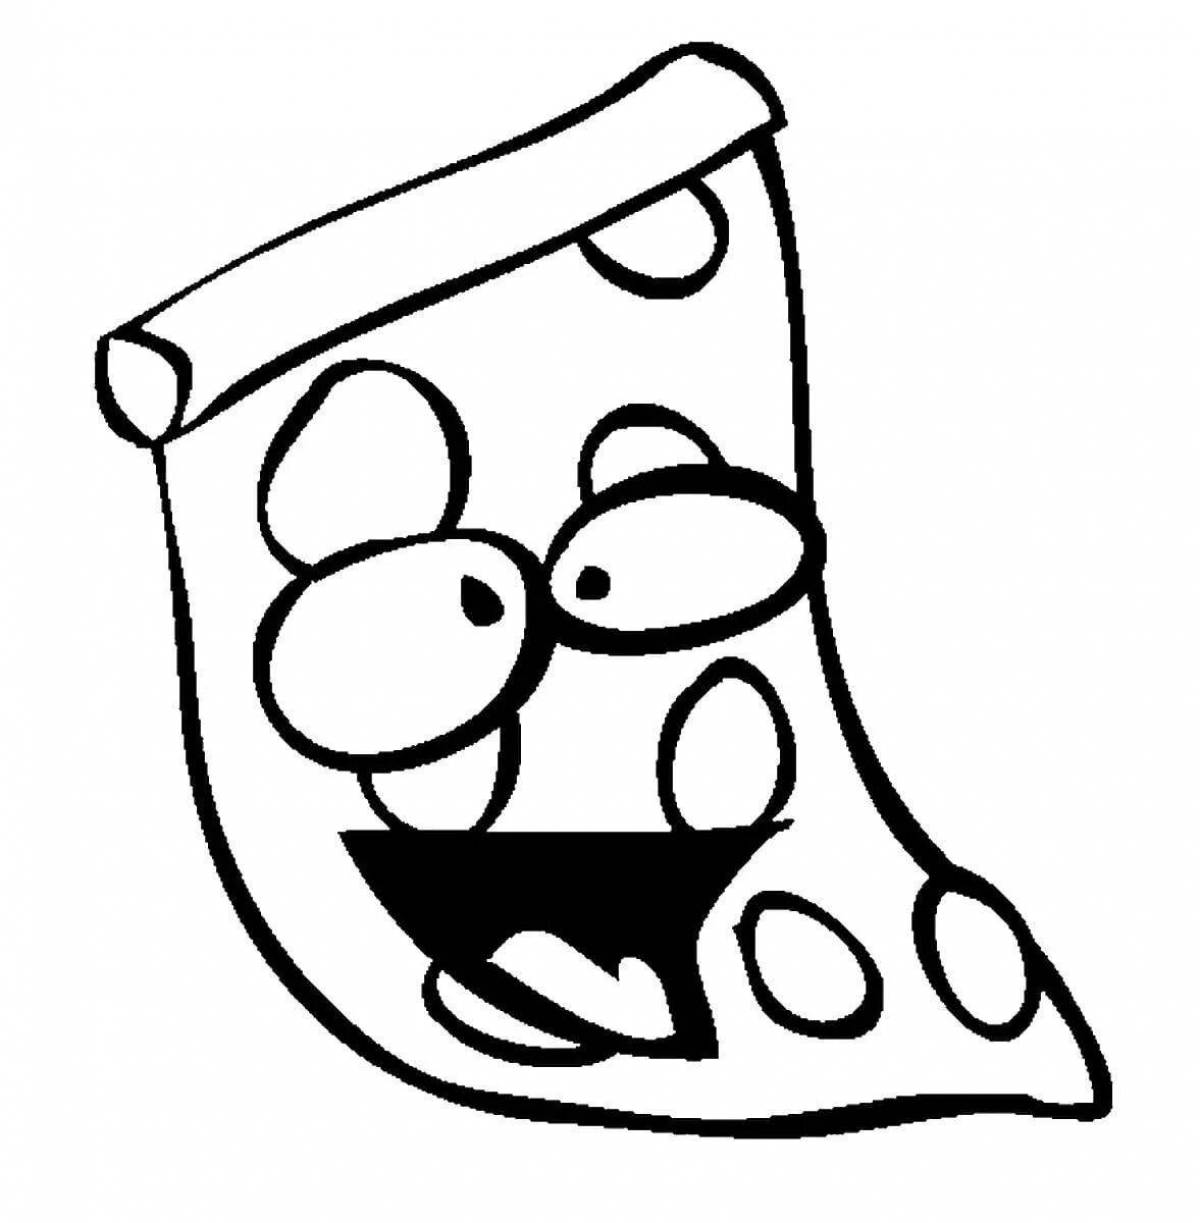 Food pizza #2